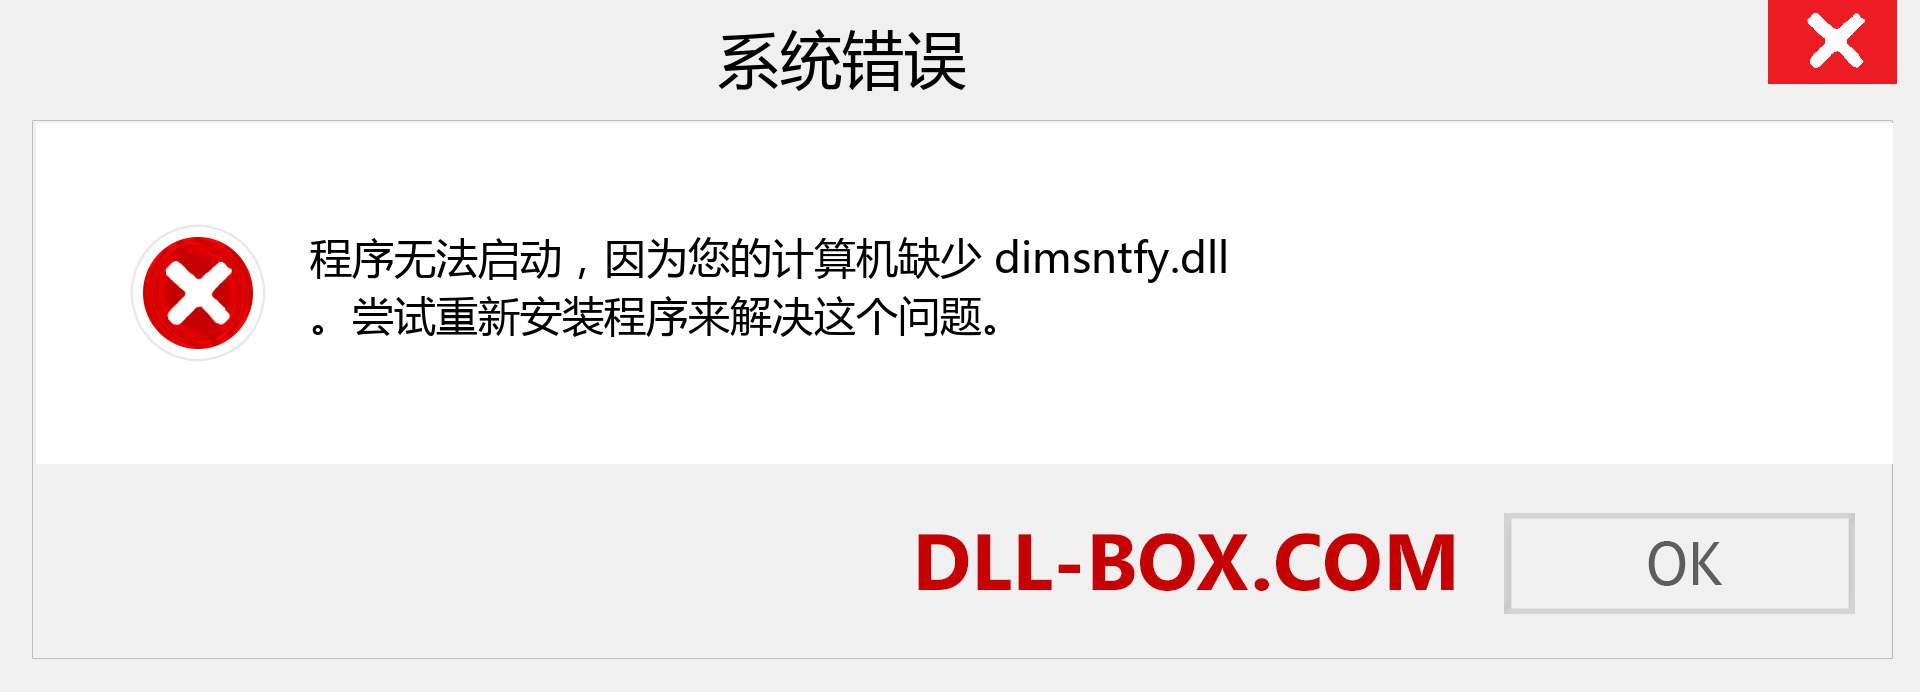 dimsntfy.dll 文件丢失？。 适用于 Windows 7、8、10 的下载 - 修复 Windows、照片、图像上的 dimsntfy dll 丢失错误